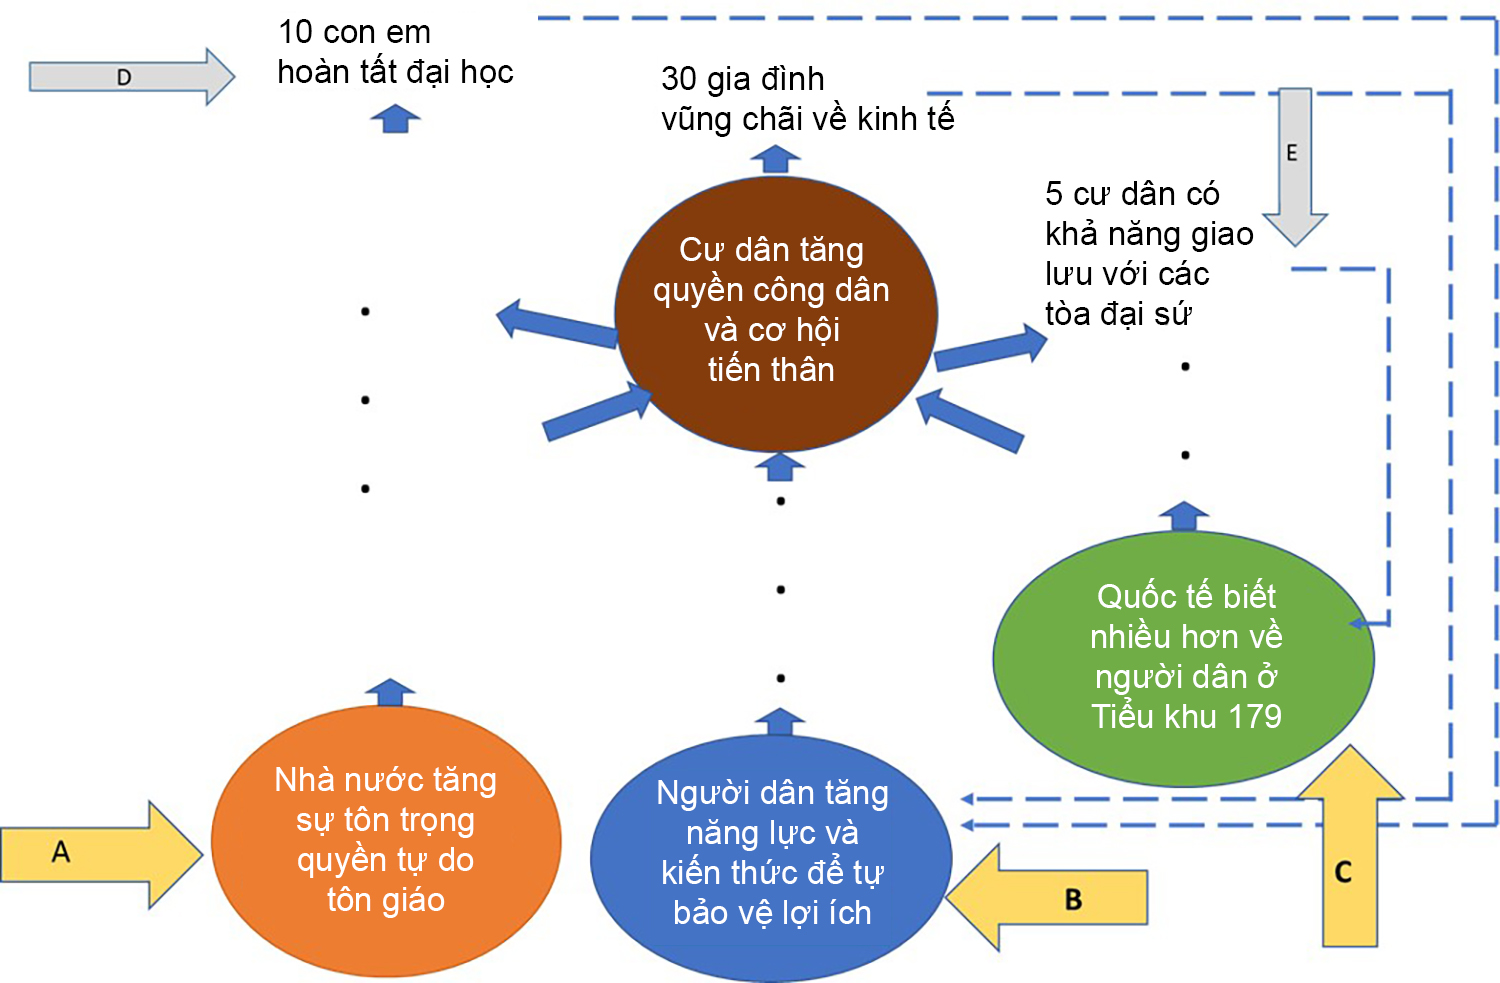 Hình 12. Bai 7. Biểu đồ chuyển đổi cho ví dụ về cộng đồng người Hmong ở Tiểu Khu 179